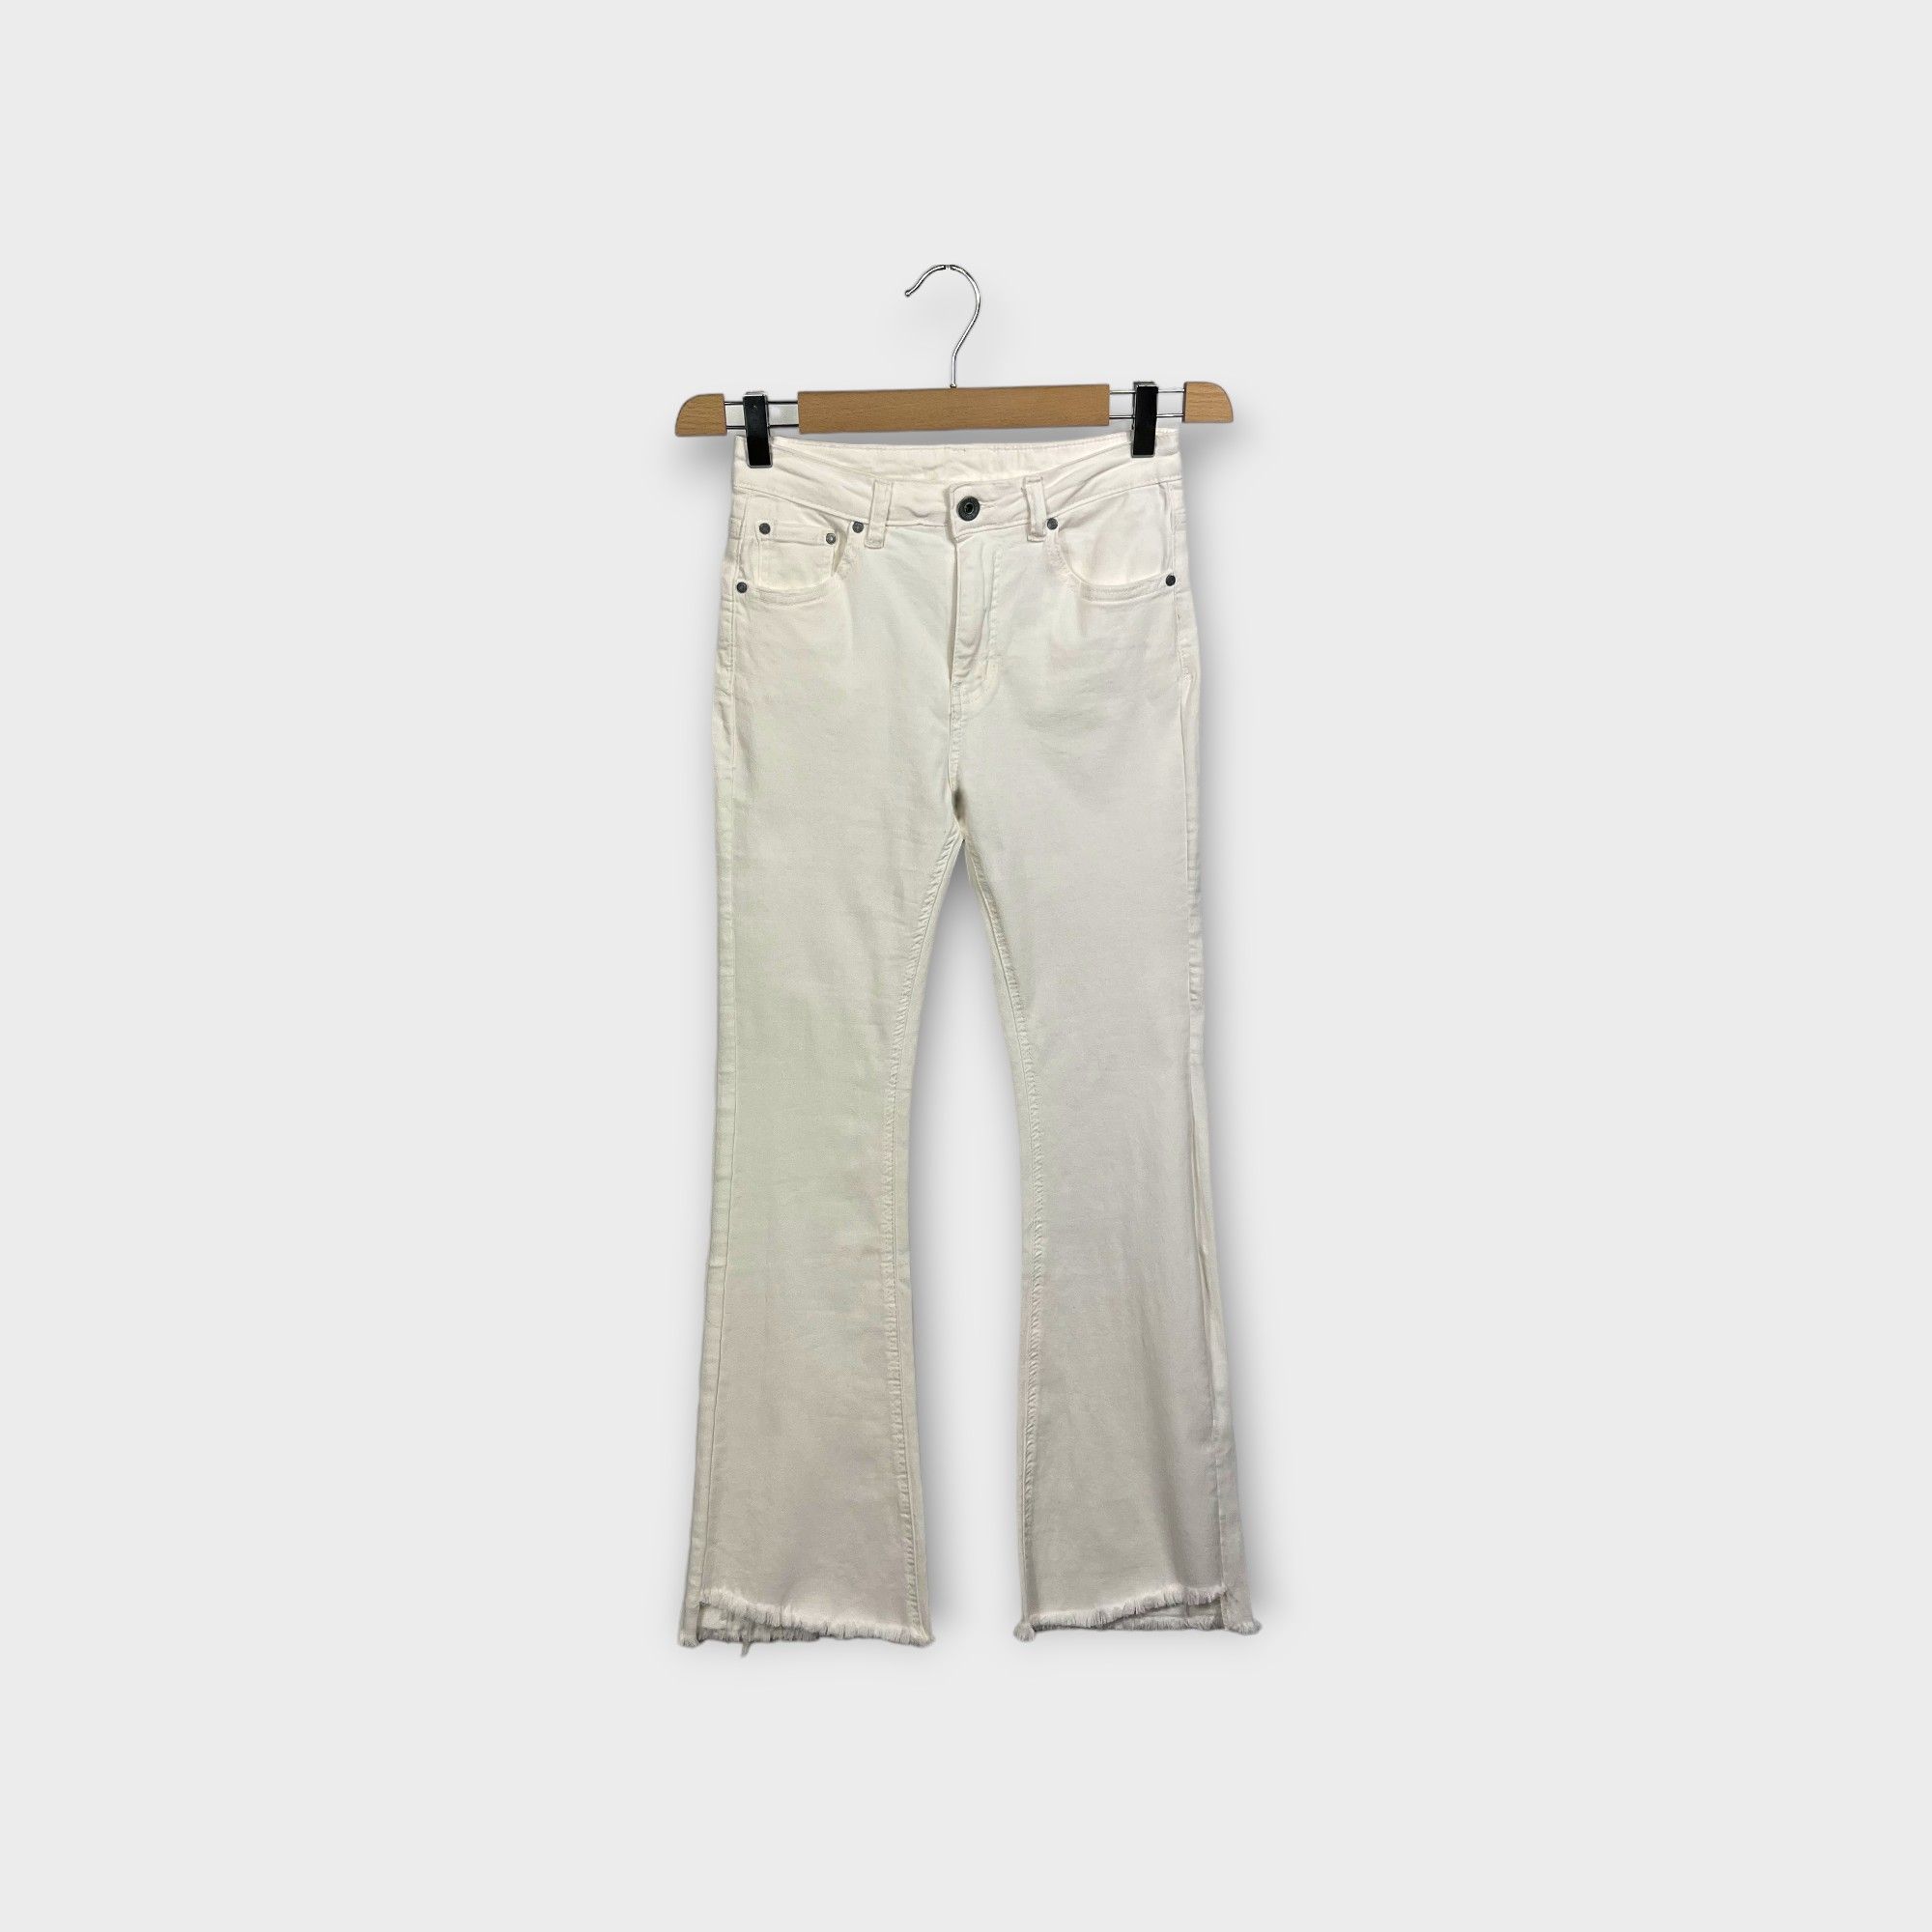 images/virtuemart/product/HELLEH Pantaloni donna modello cinque tasche in tela di cotone stretch con fondo a zampetta sfrangiata colore bianco 1.jpg